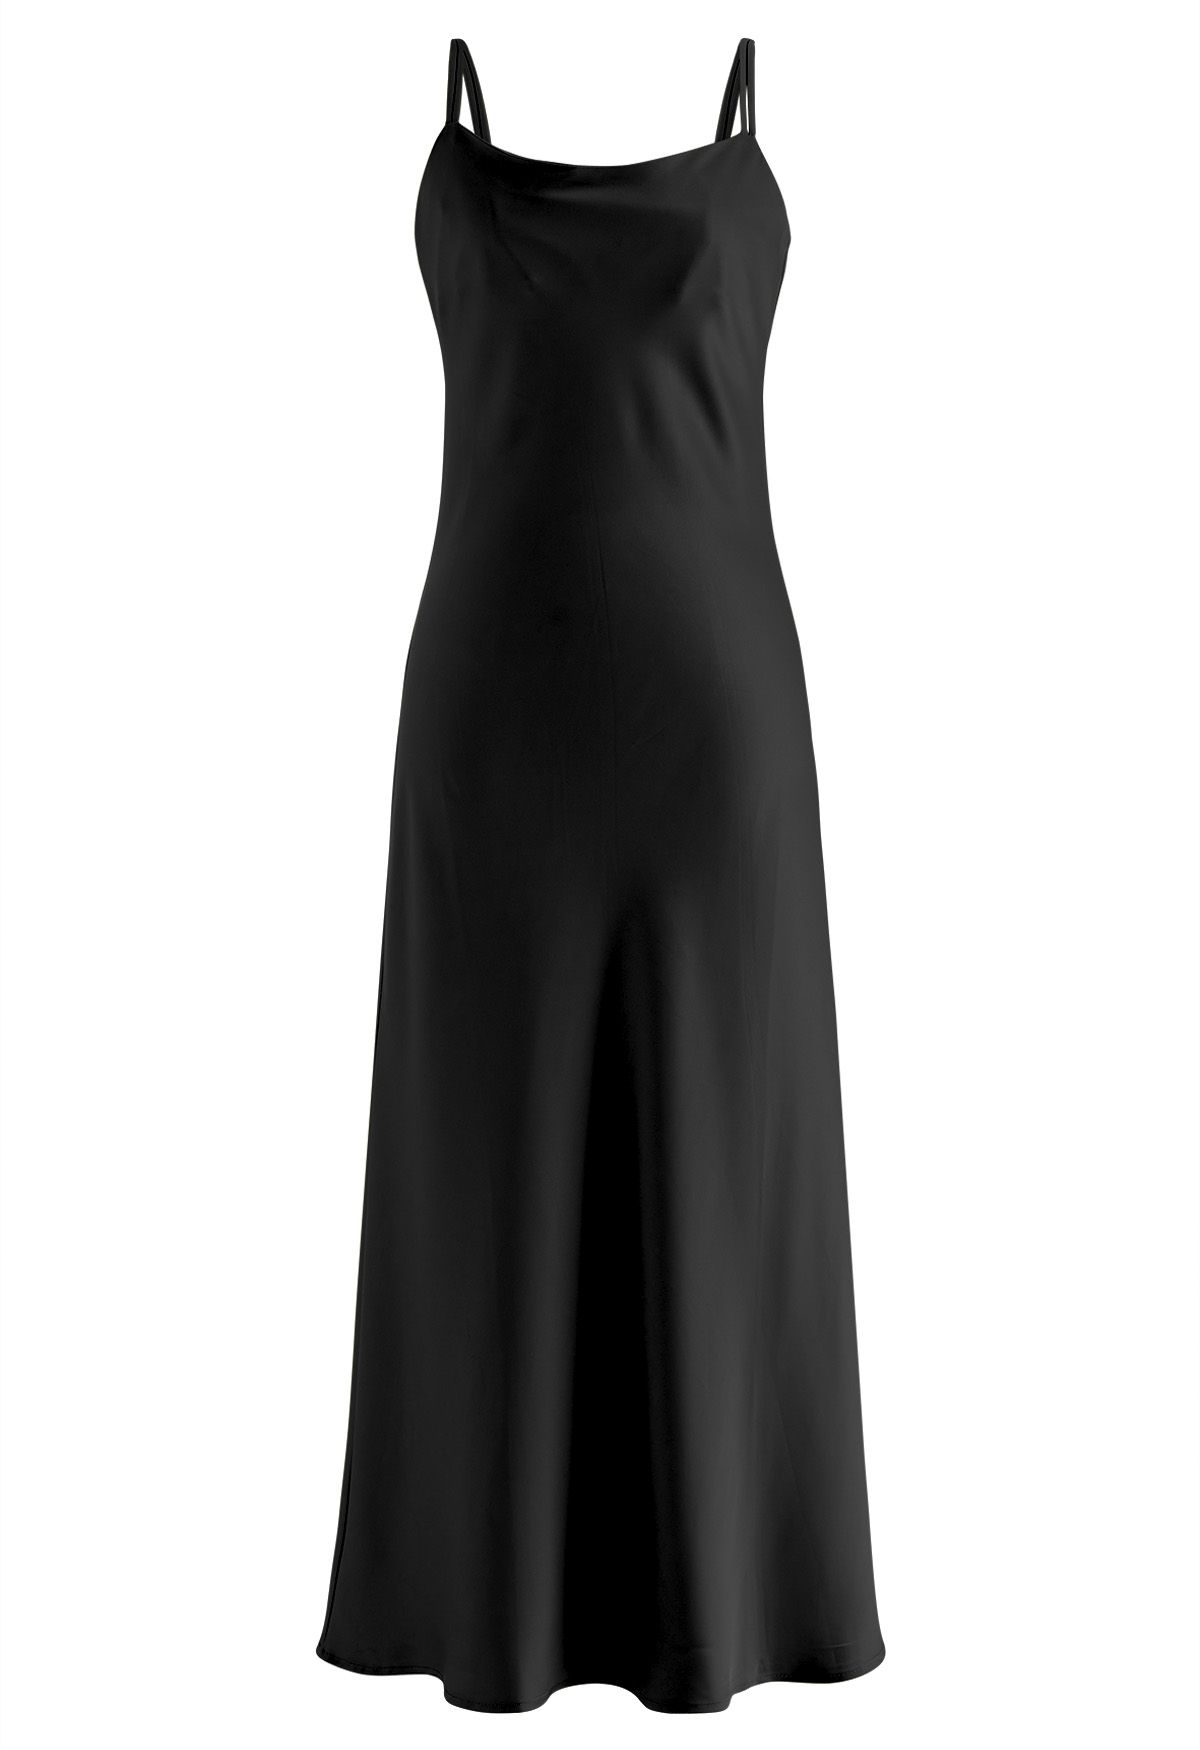 Double Straps Satin Cami Dress in Black - Retro, Indie and Unique Fashion